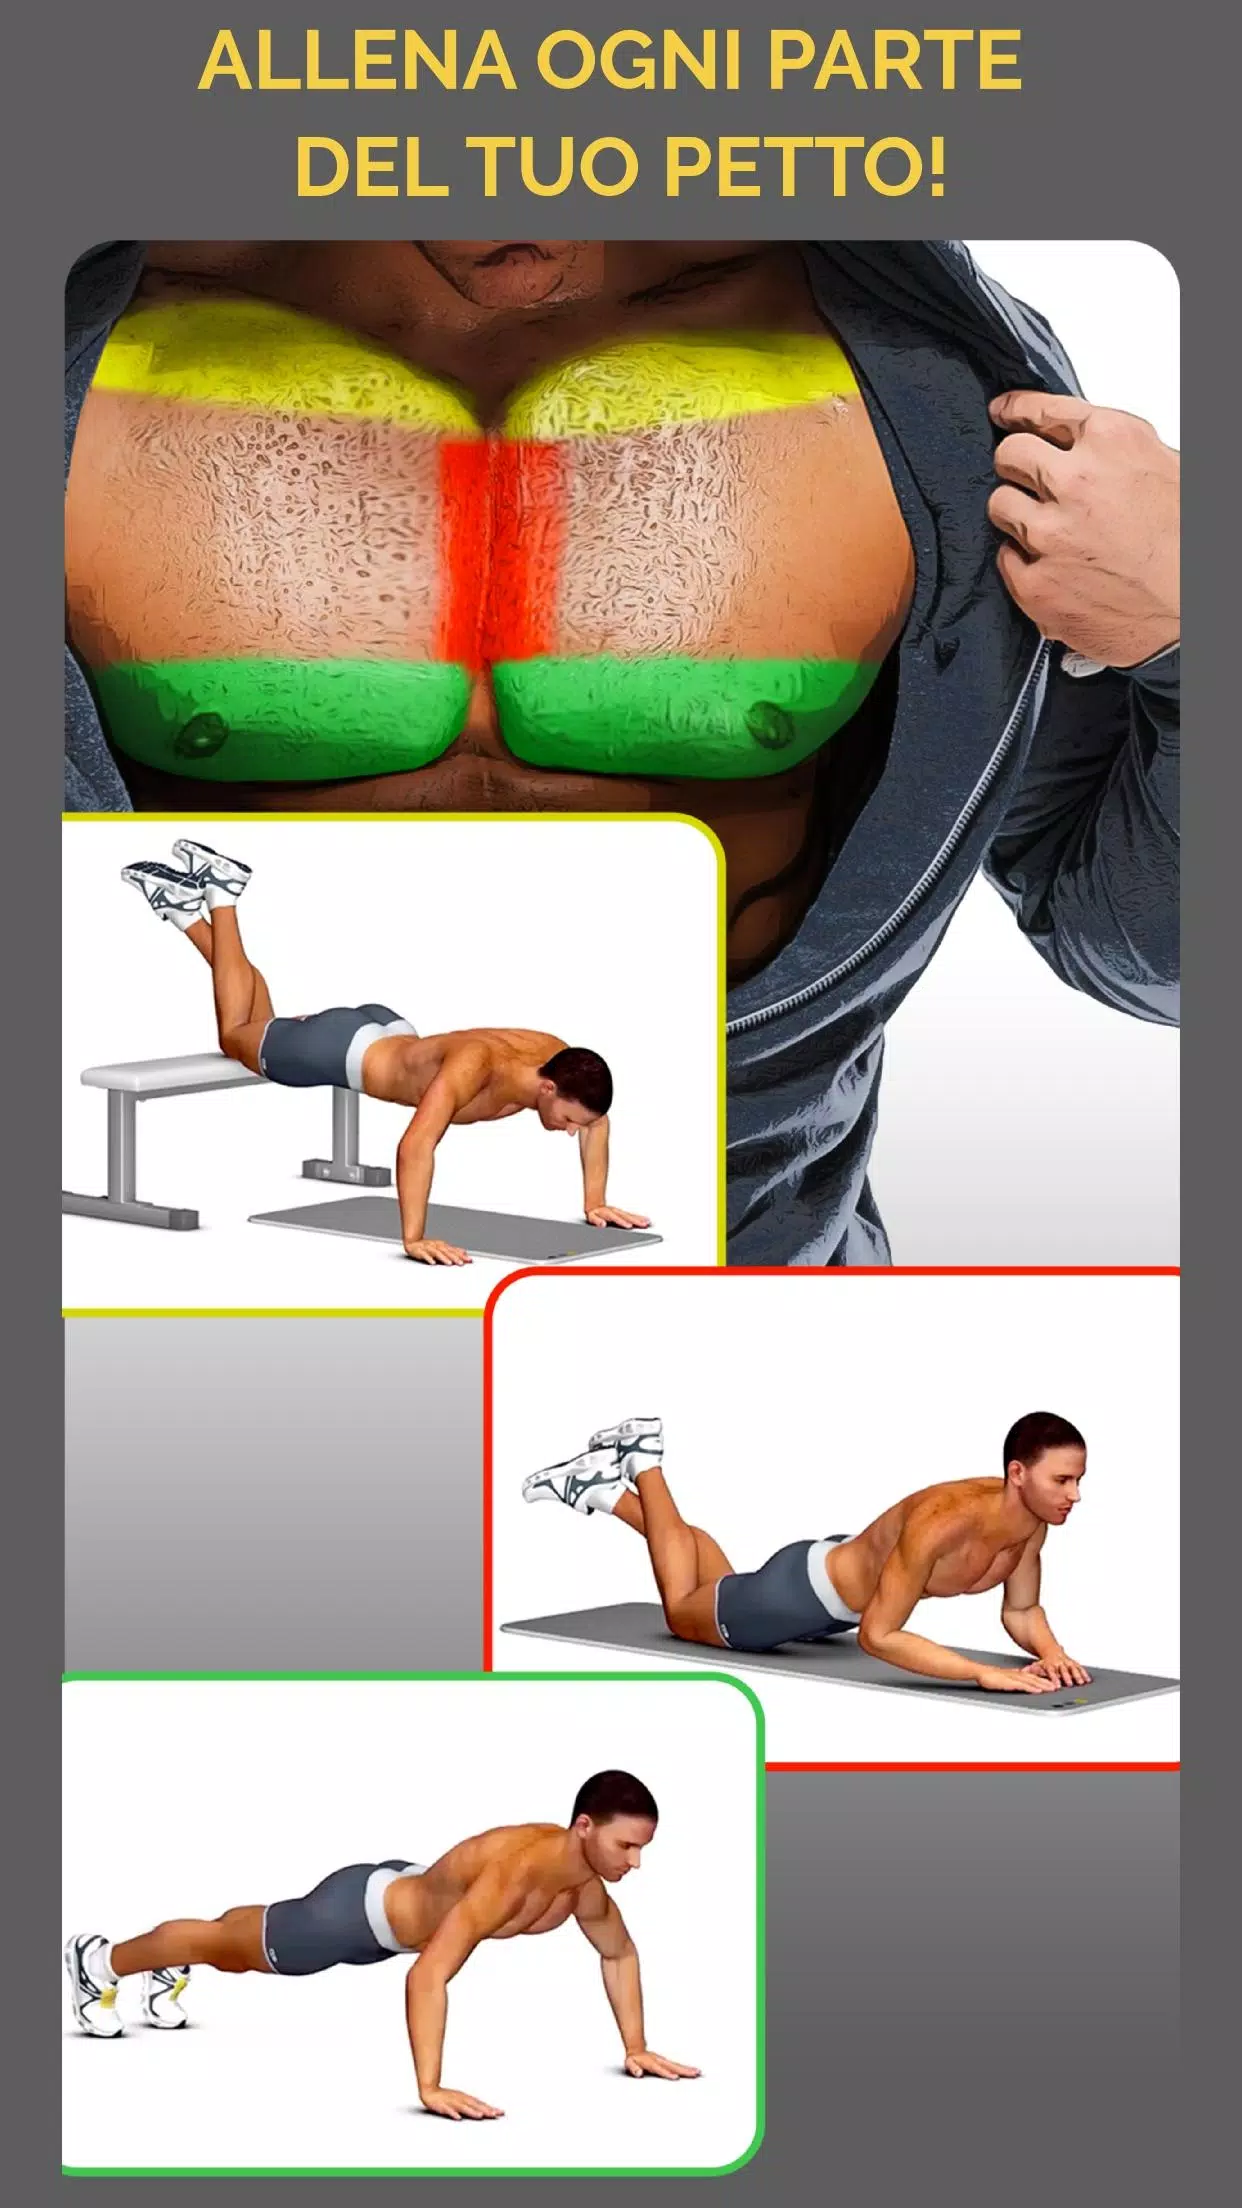 Sfida per i muscoli pettorali in 30 giorni for Android - APK Download